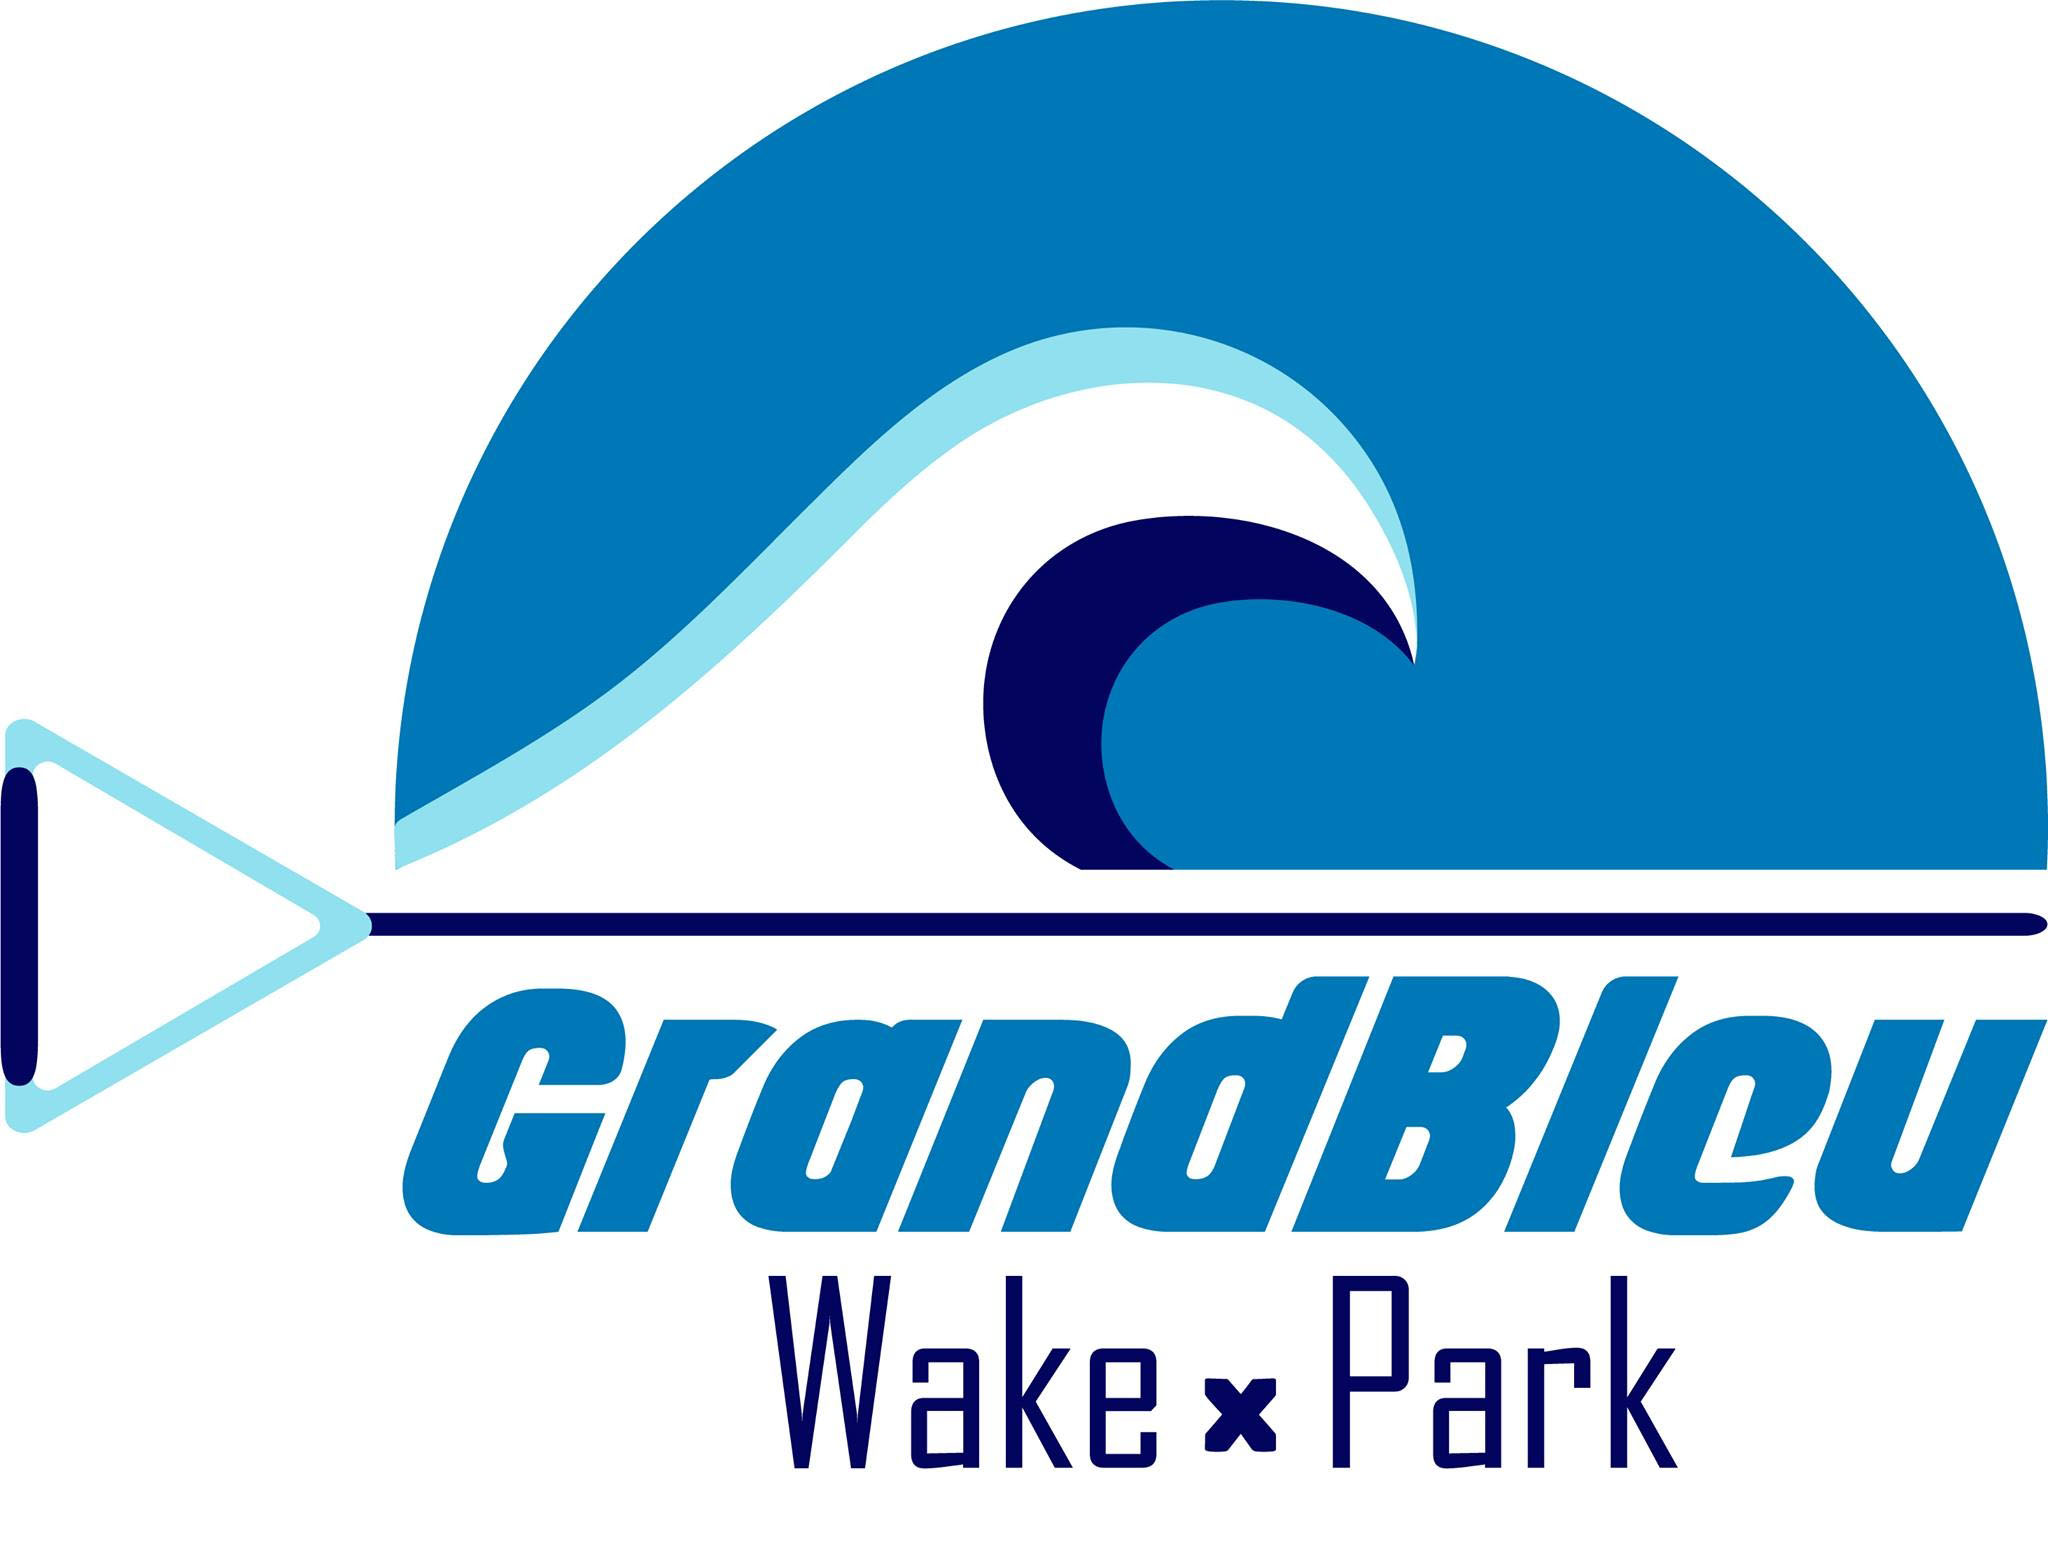 Grand Bleu Wake Parc (Champey)